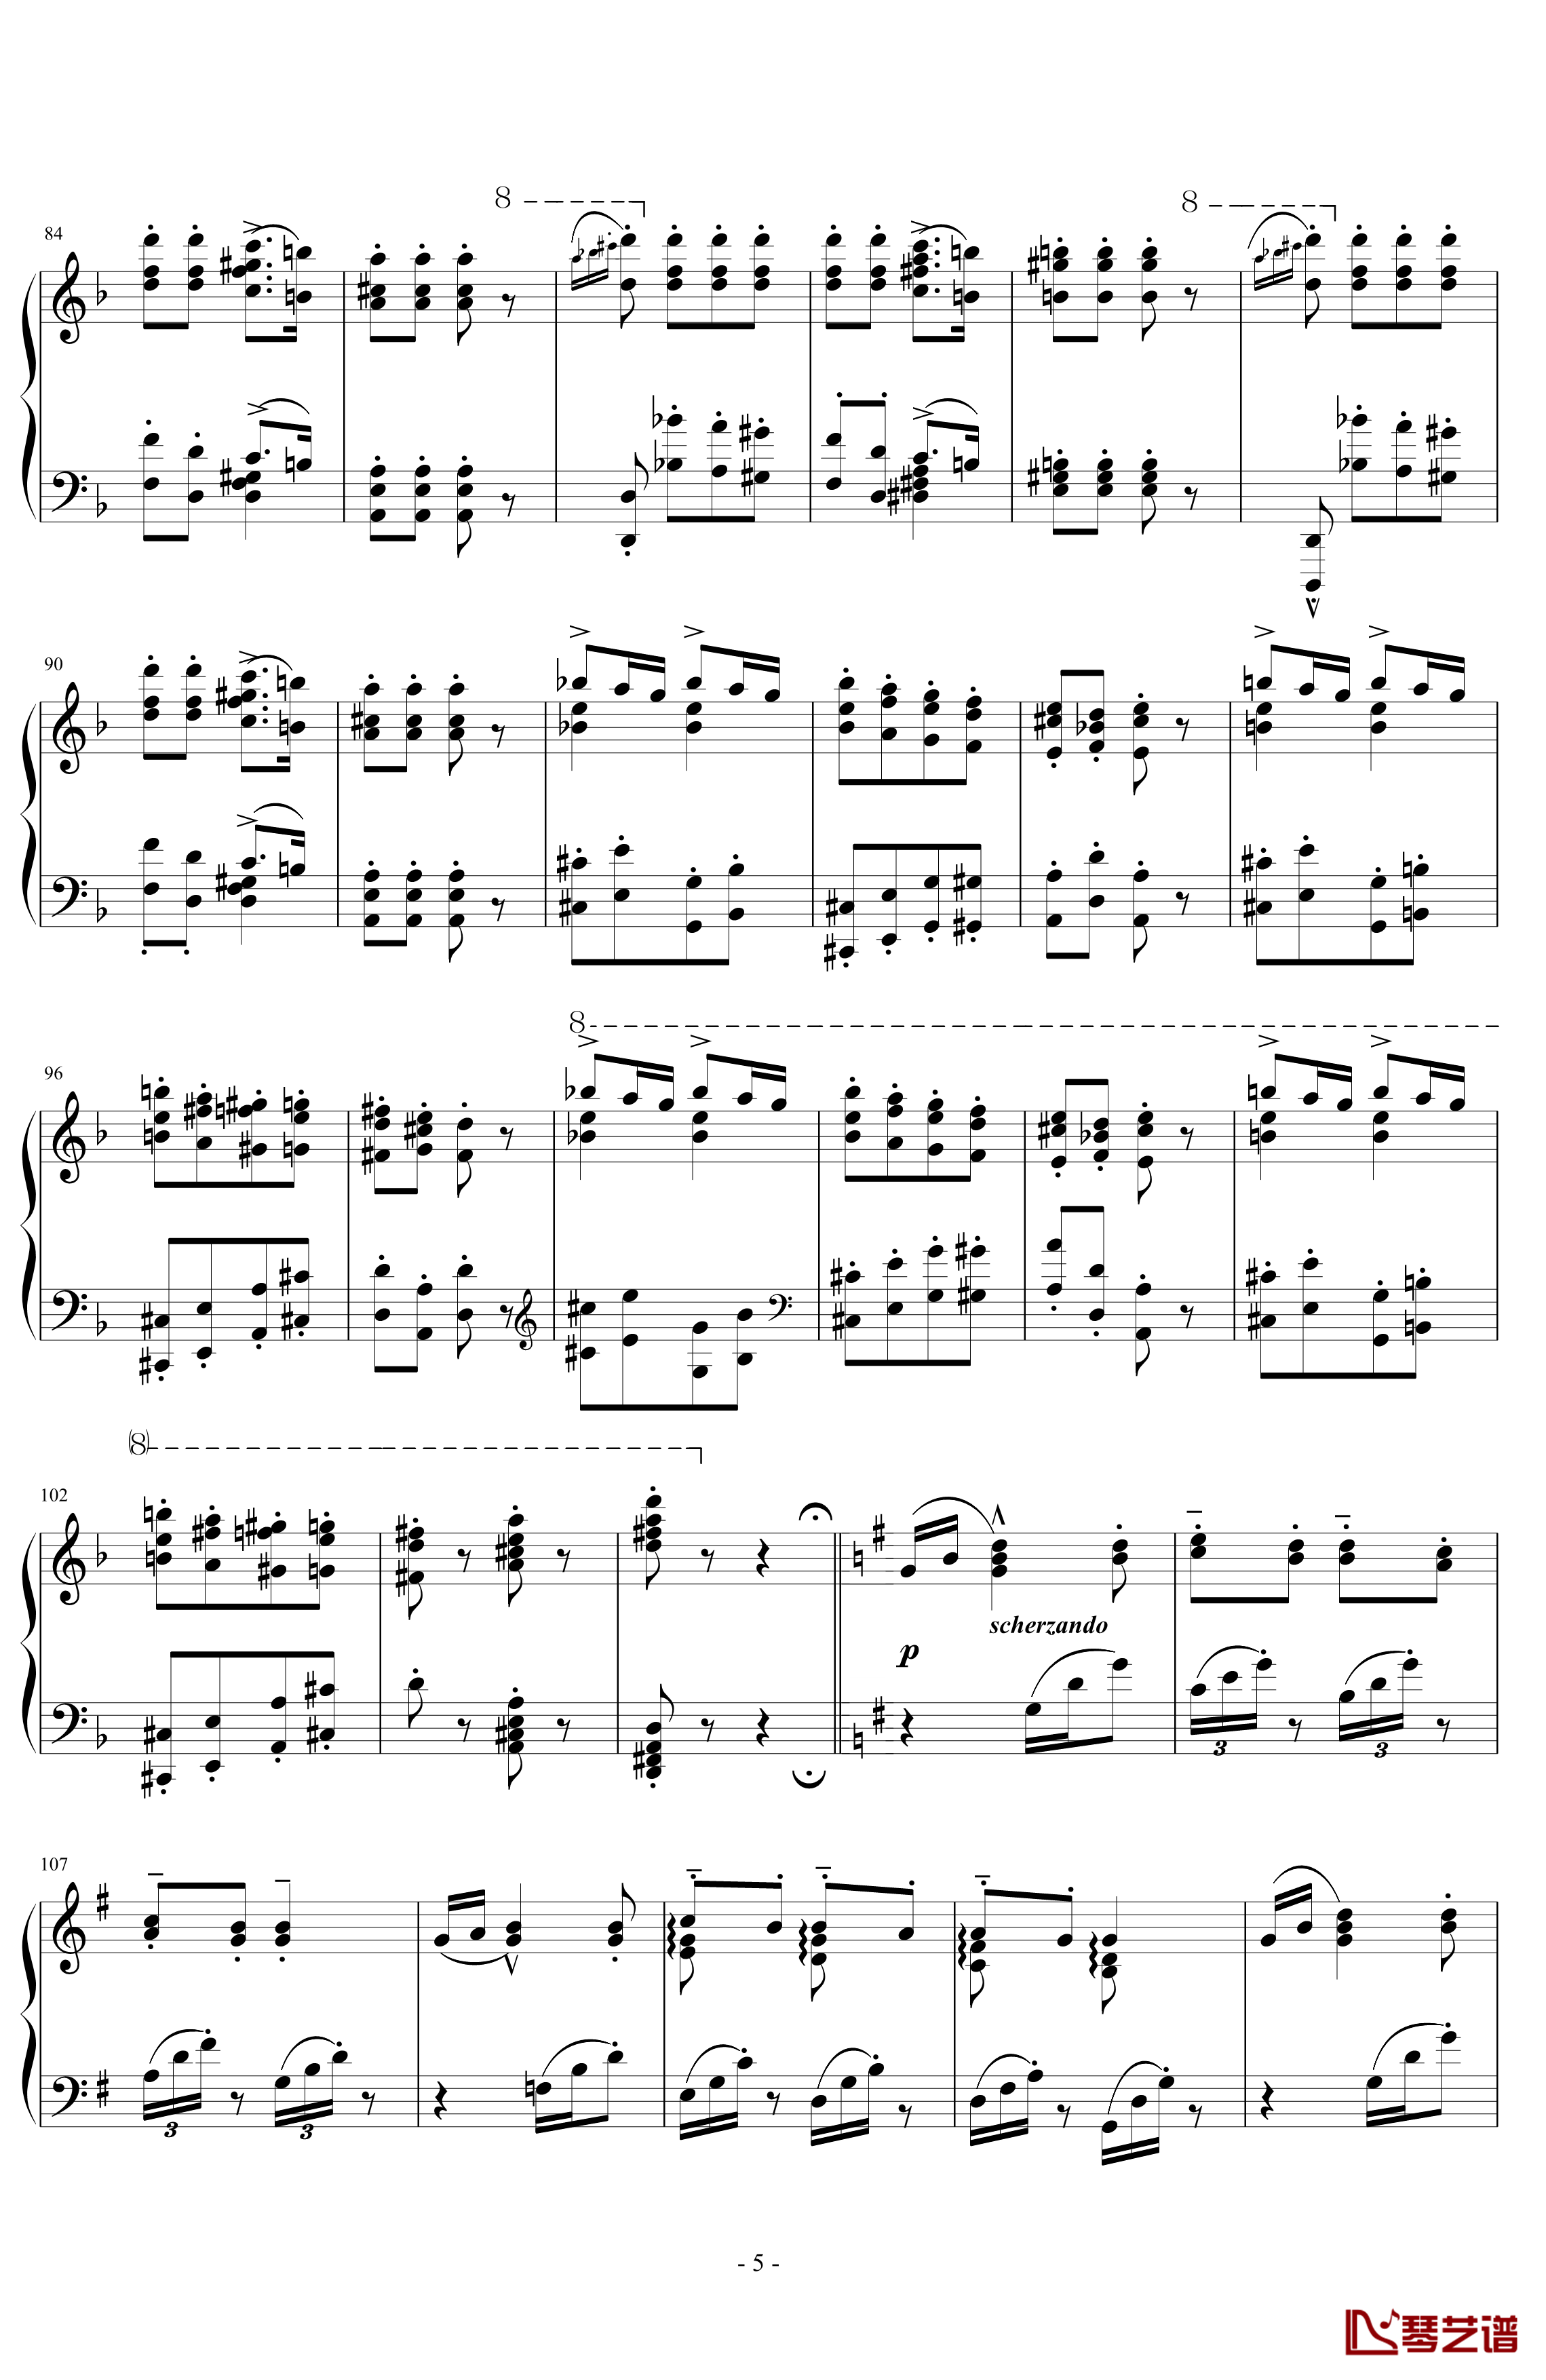 匈牙利狂想曲第7号钢琴谱-一首欢快活泼的舞曲-李斯特5